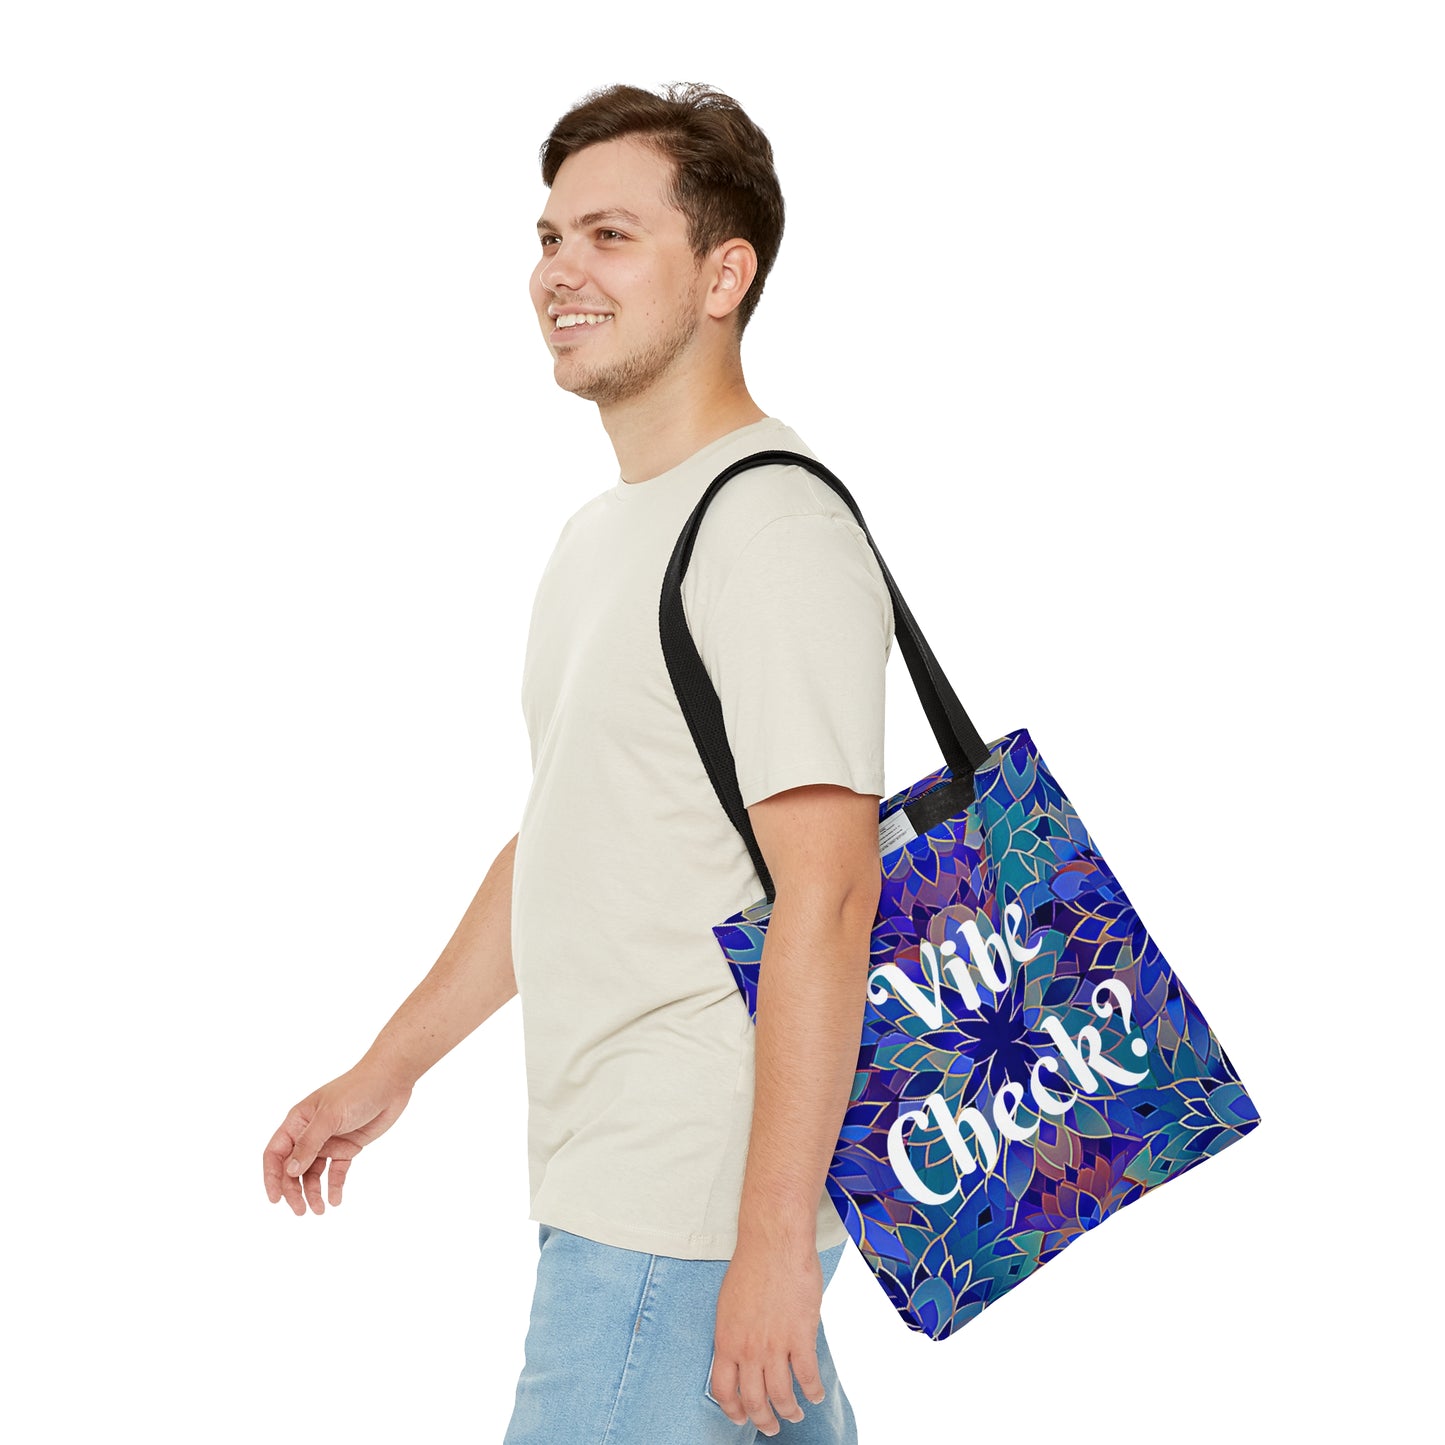 Vibe Check? Tote Bag